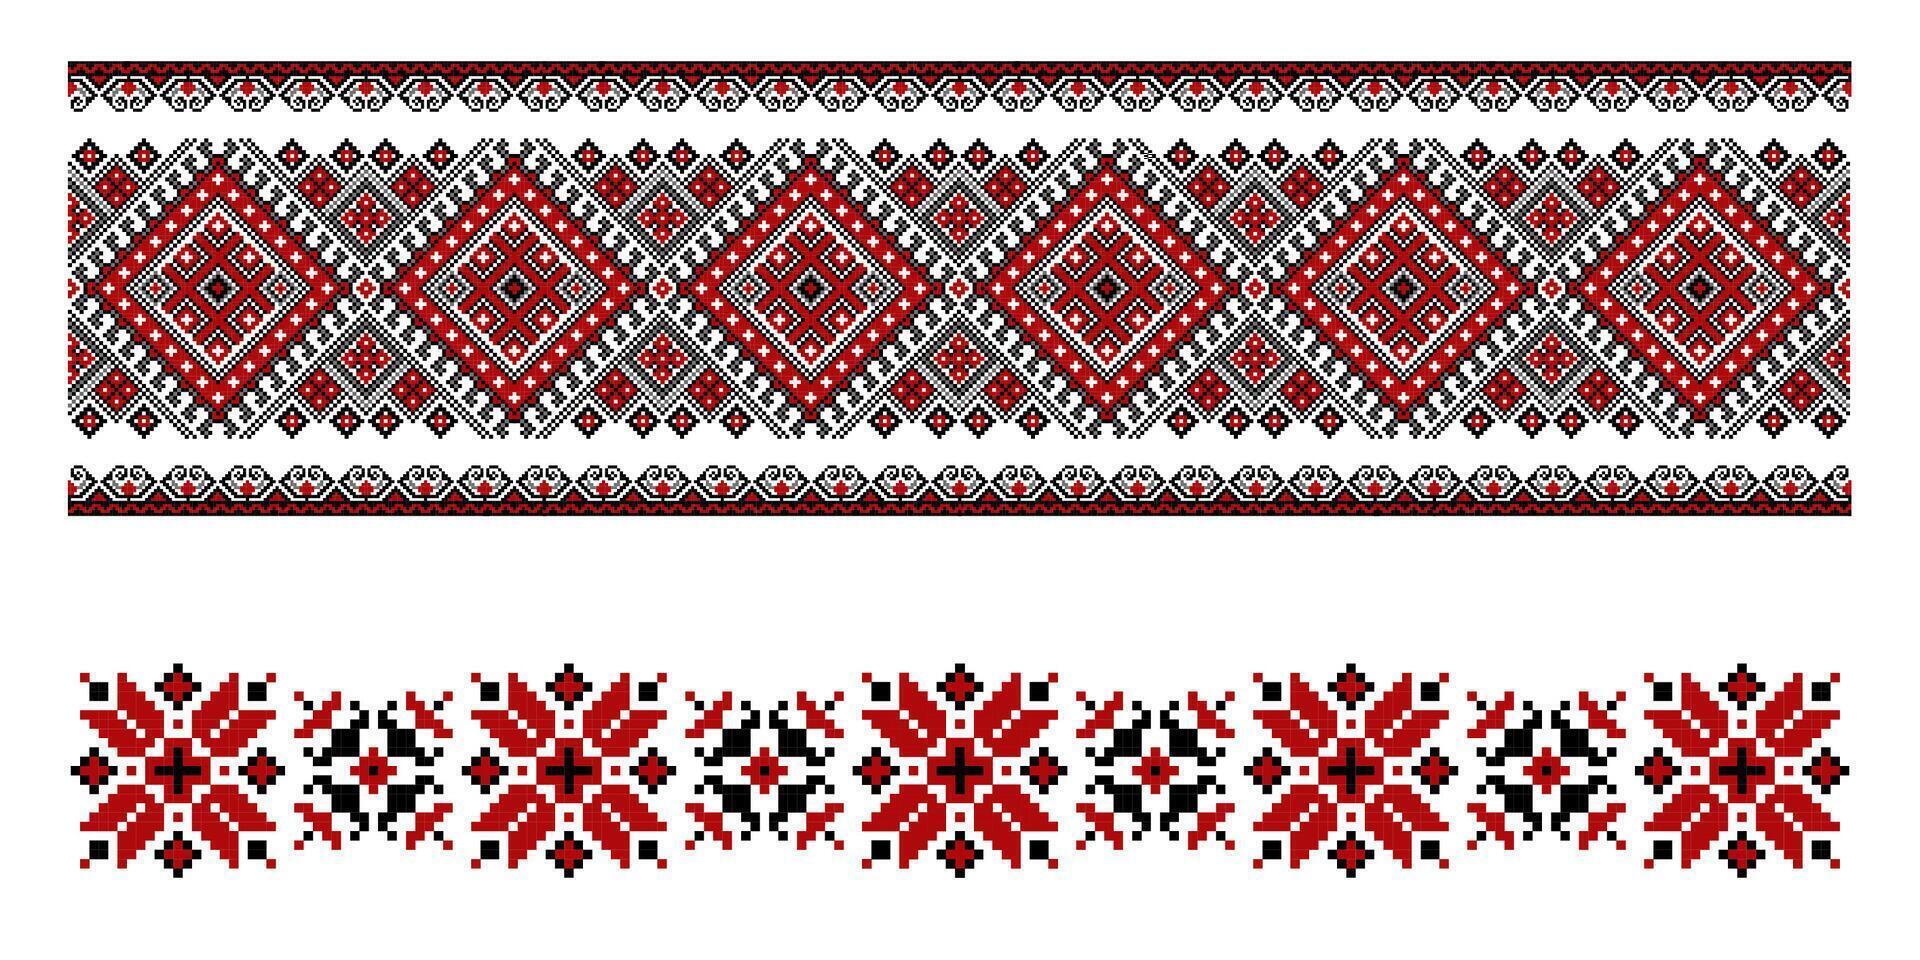 reeks van bewerkbare kleurrijk naadloos etnisch oekraïens traditioneel kruis steek patronen voor borduurwerk steek. bloemen en meetkundig ornamenten. vector illustratie